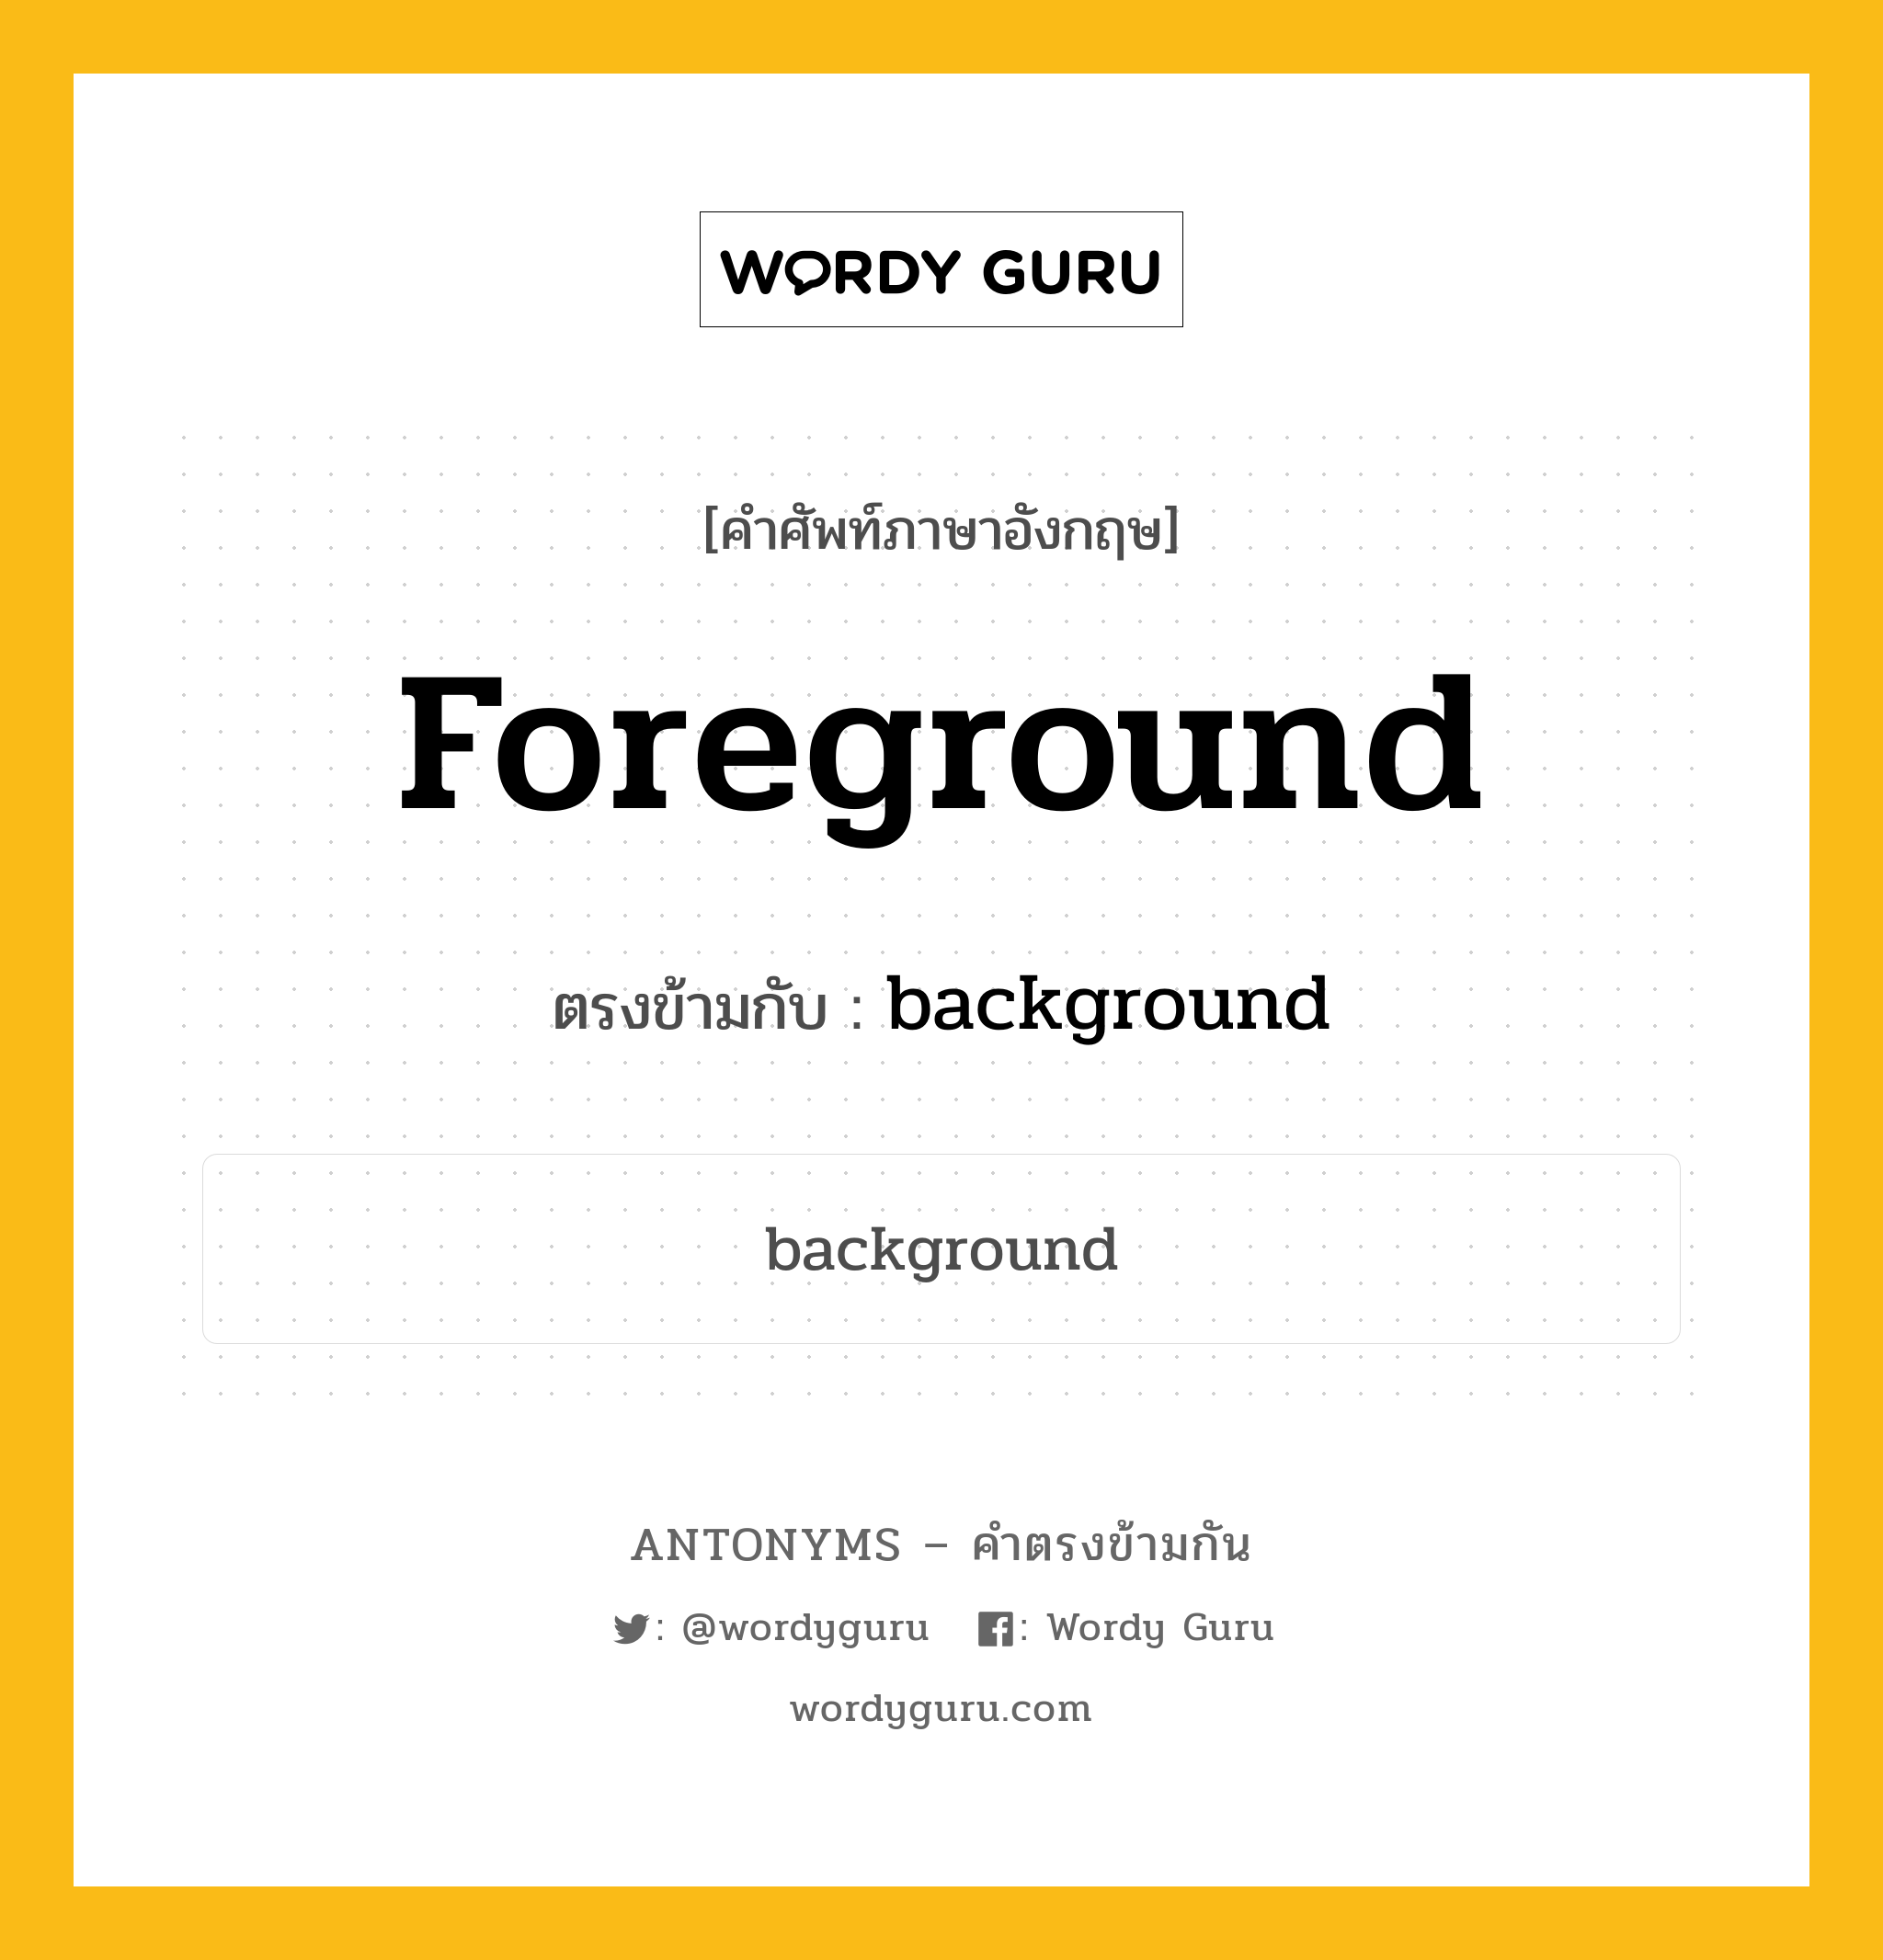 foreground เป็นคำตรงข้ามกับคำไหนบ้าง?, คำศัพท์ภาษาอังกฤษ foreground ตรงข้ามกับ background หมวด background